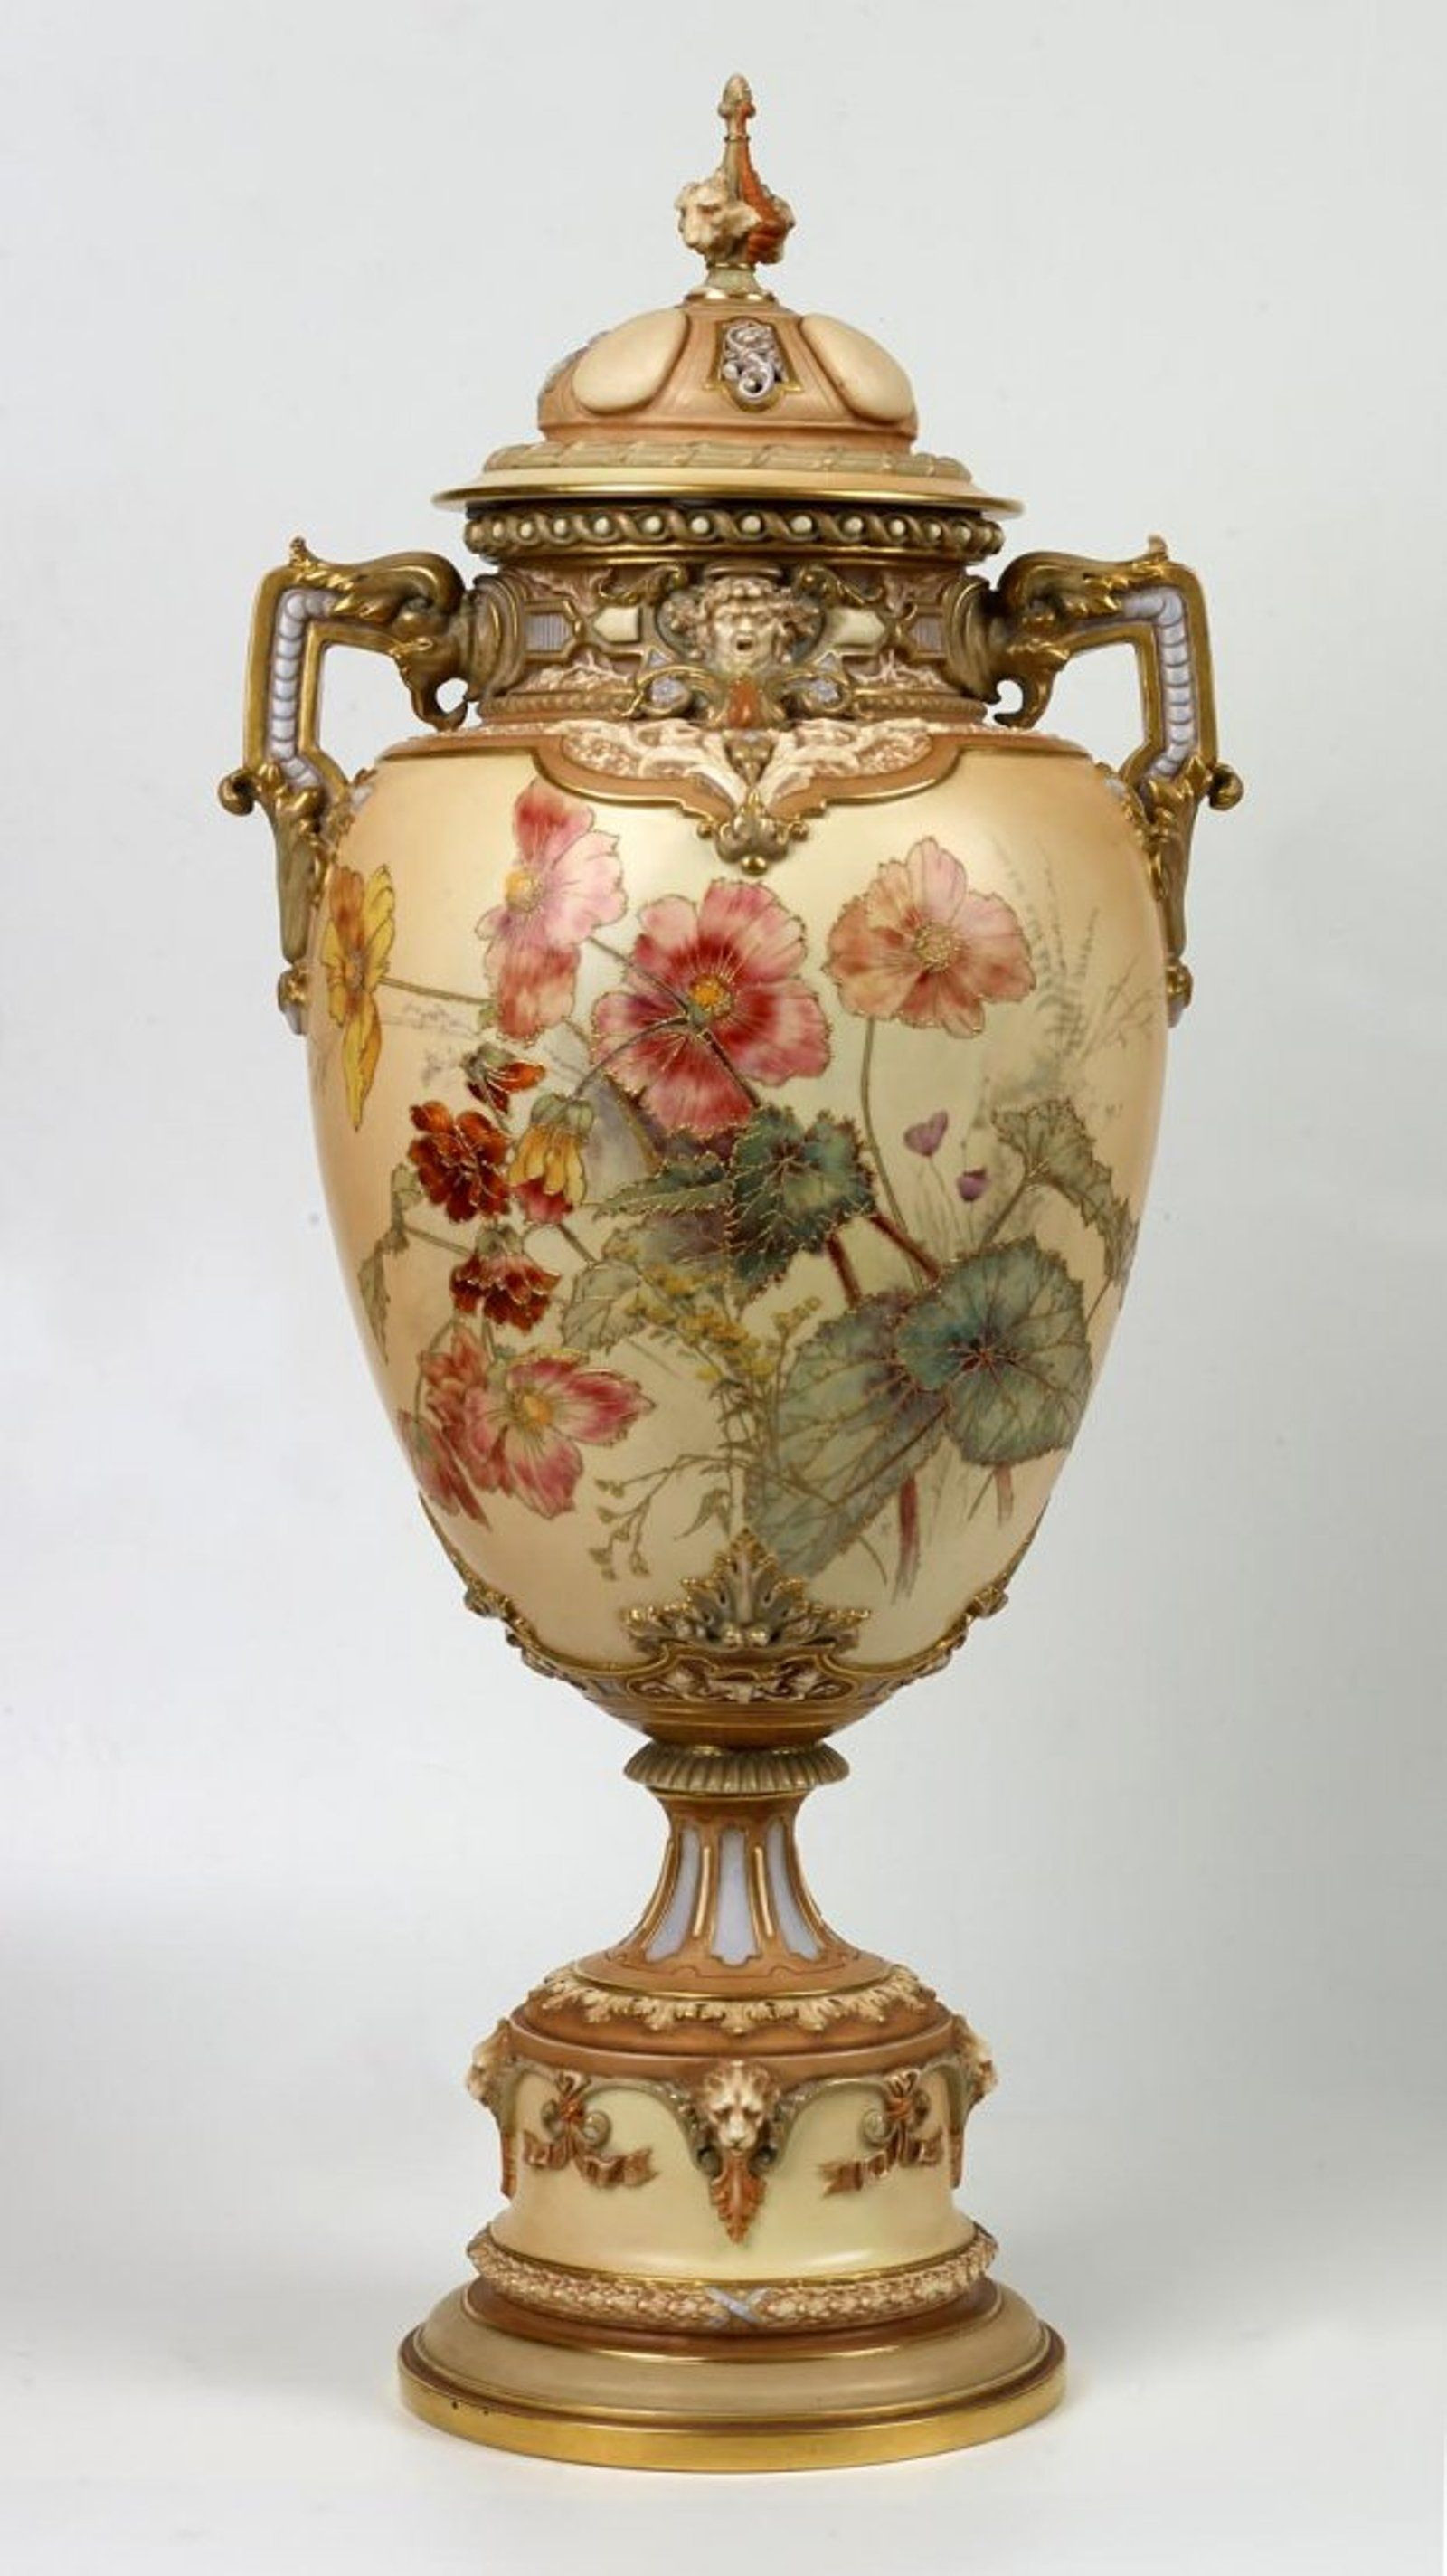 23 Perfect Royal Bonn Vase 2024 free download royal bonn vase of a large royal worcester covered urn english circa 1894 keramia in a large royal worcester covered urn english circa 1894